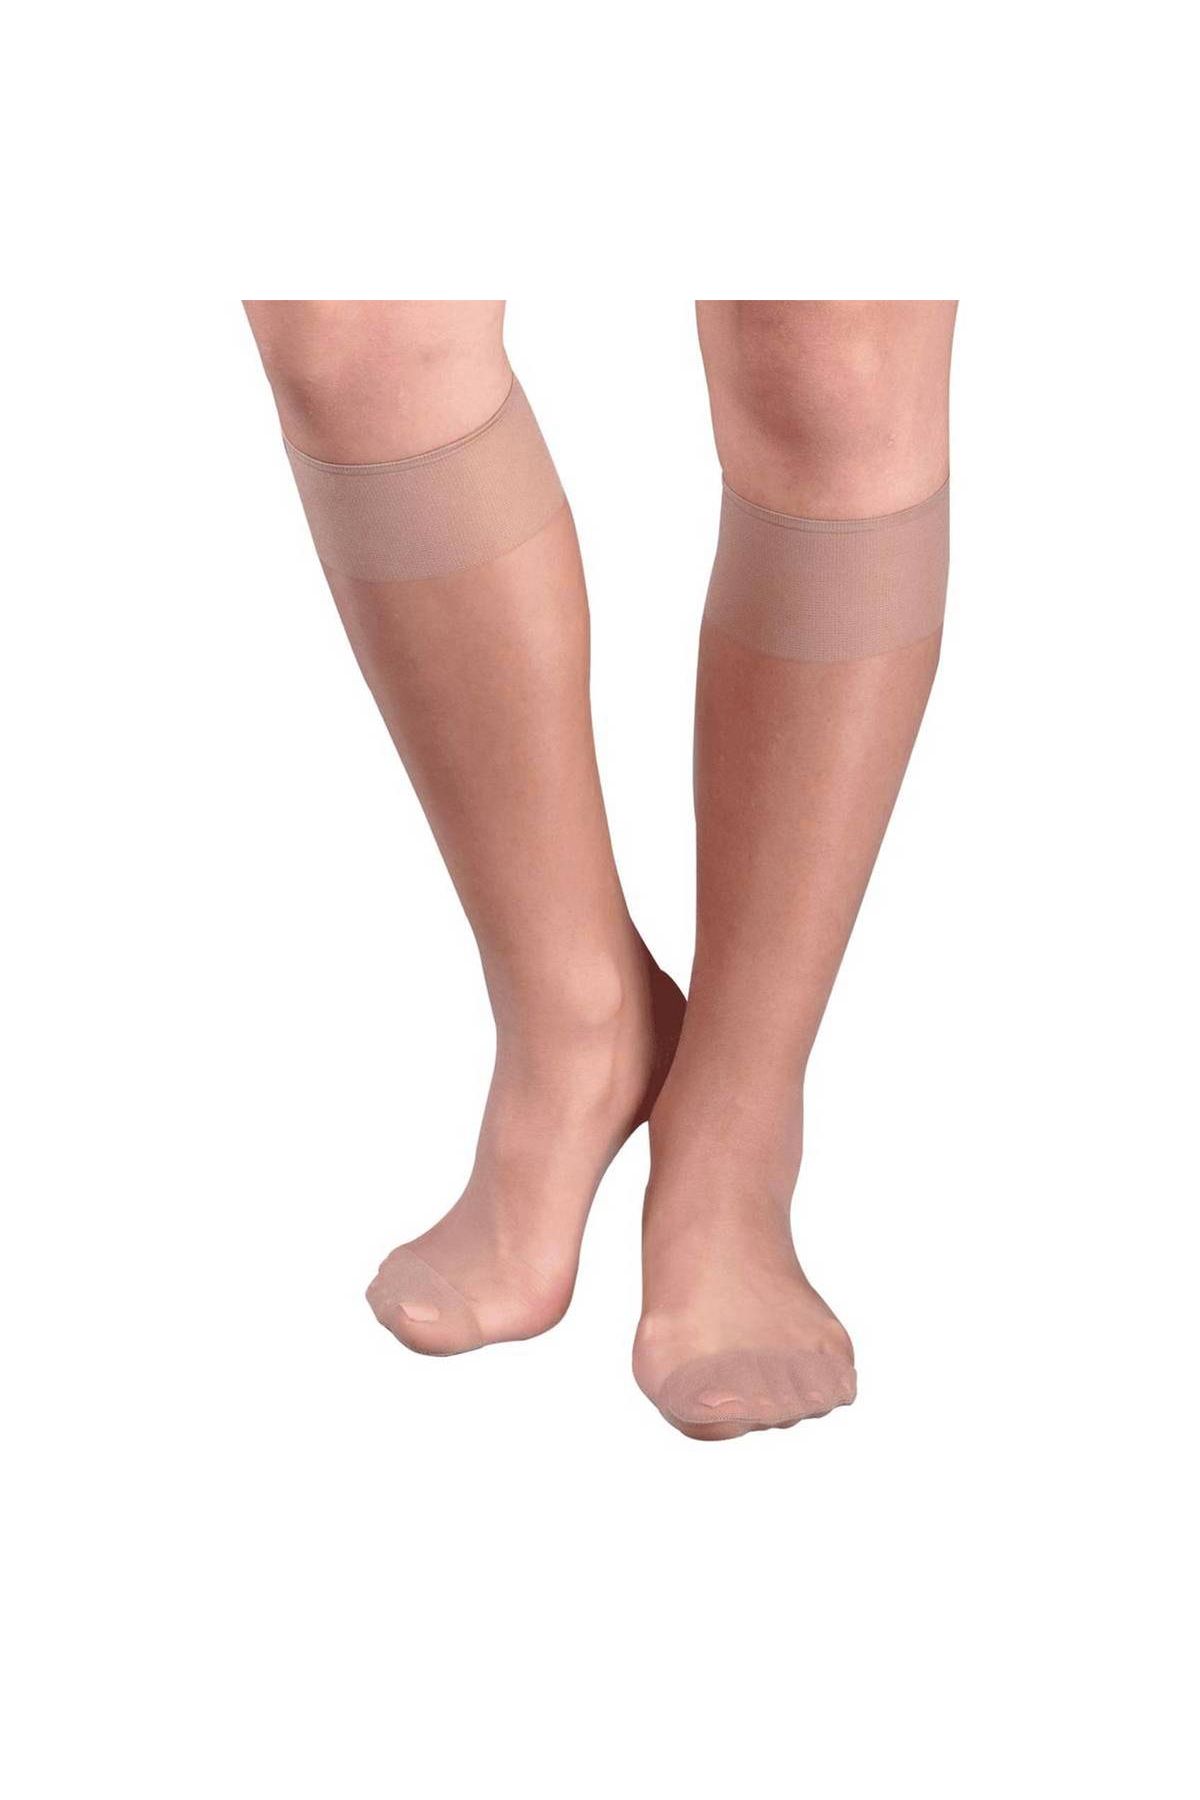 İtaliana Opak Konfor Bantlı Dizaltı Çorap 1013 | Koyu Ten | Cosmedrome